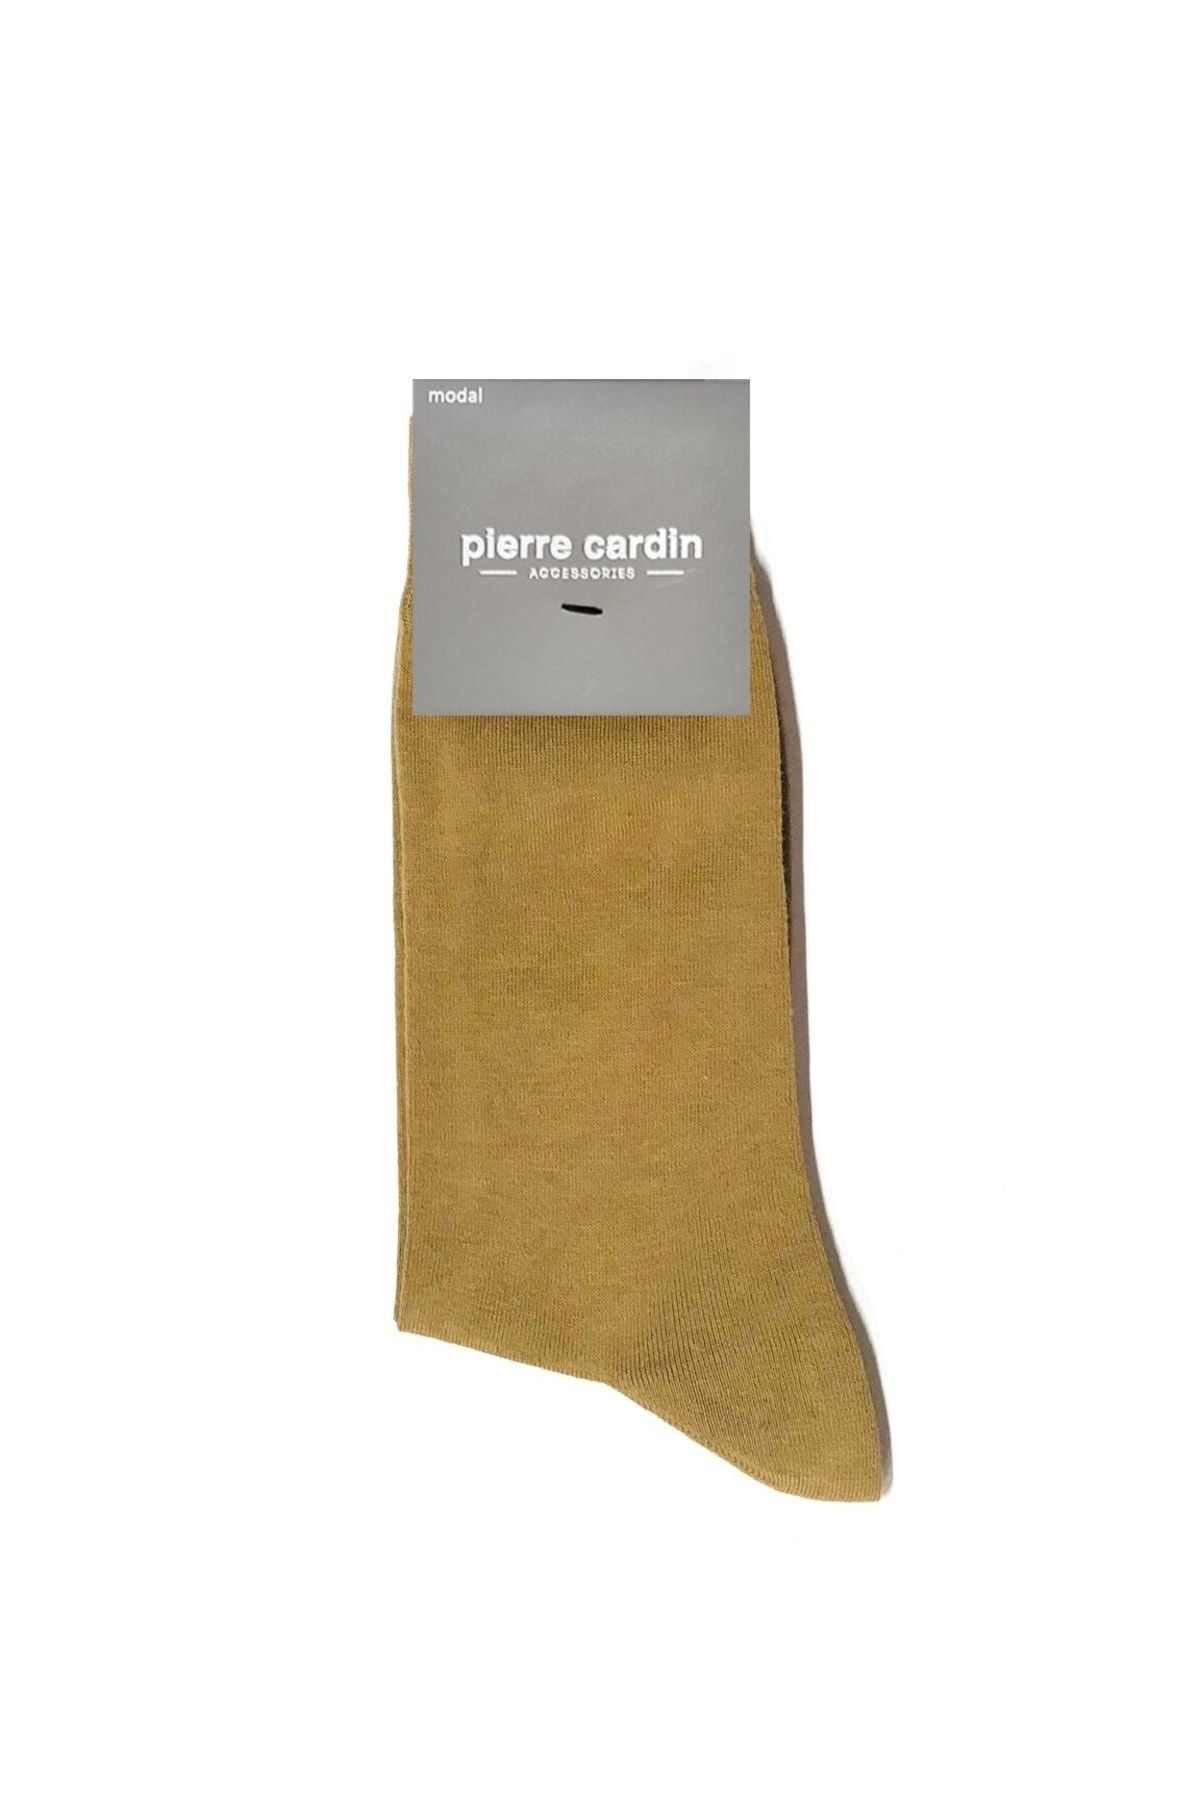 Pierre Cardin Flat Modal Erkek Çorap